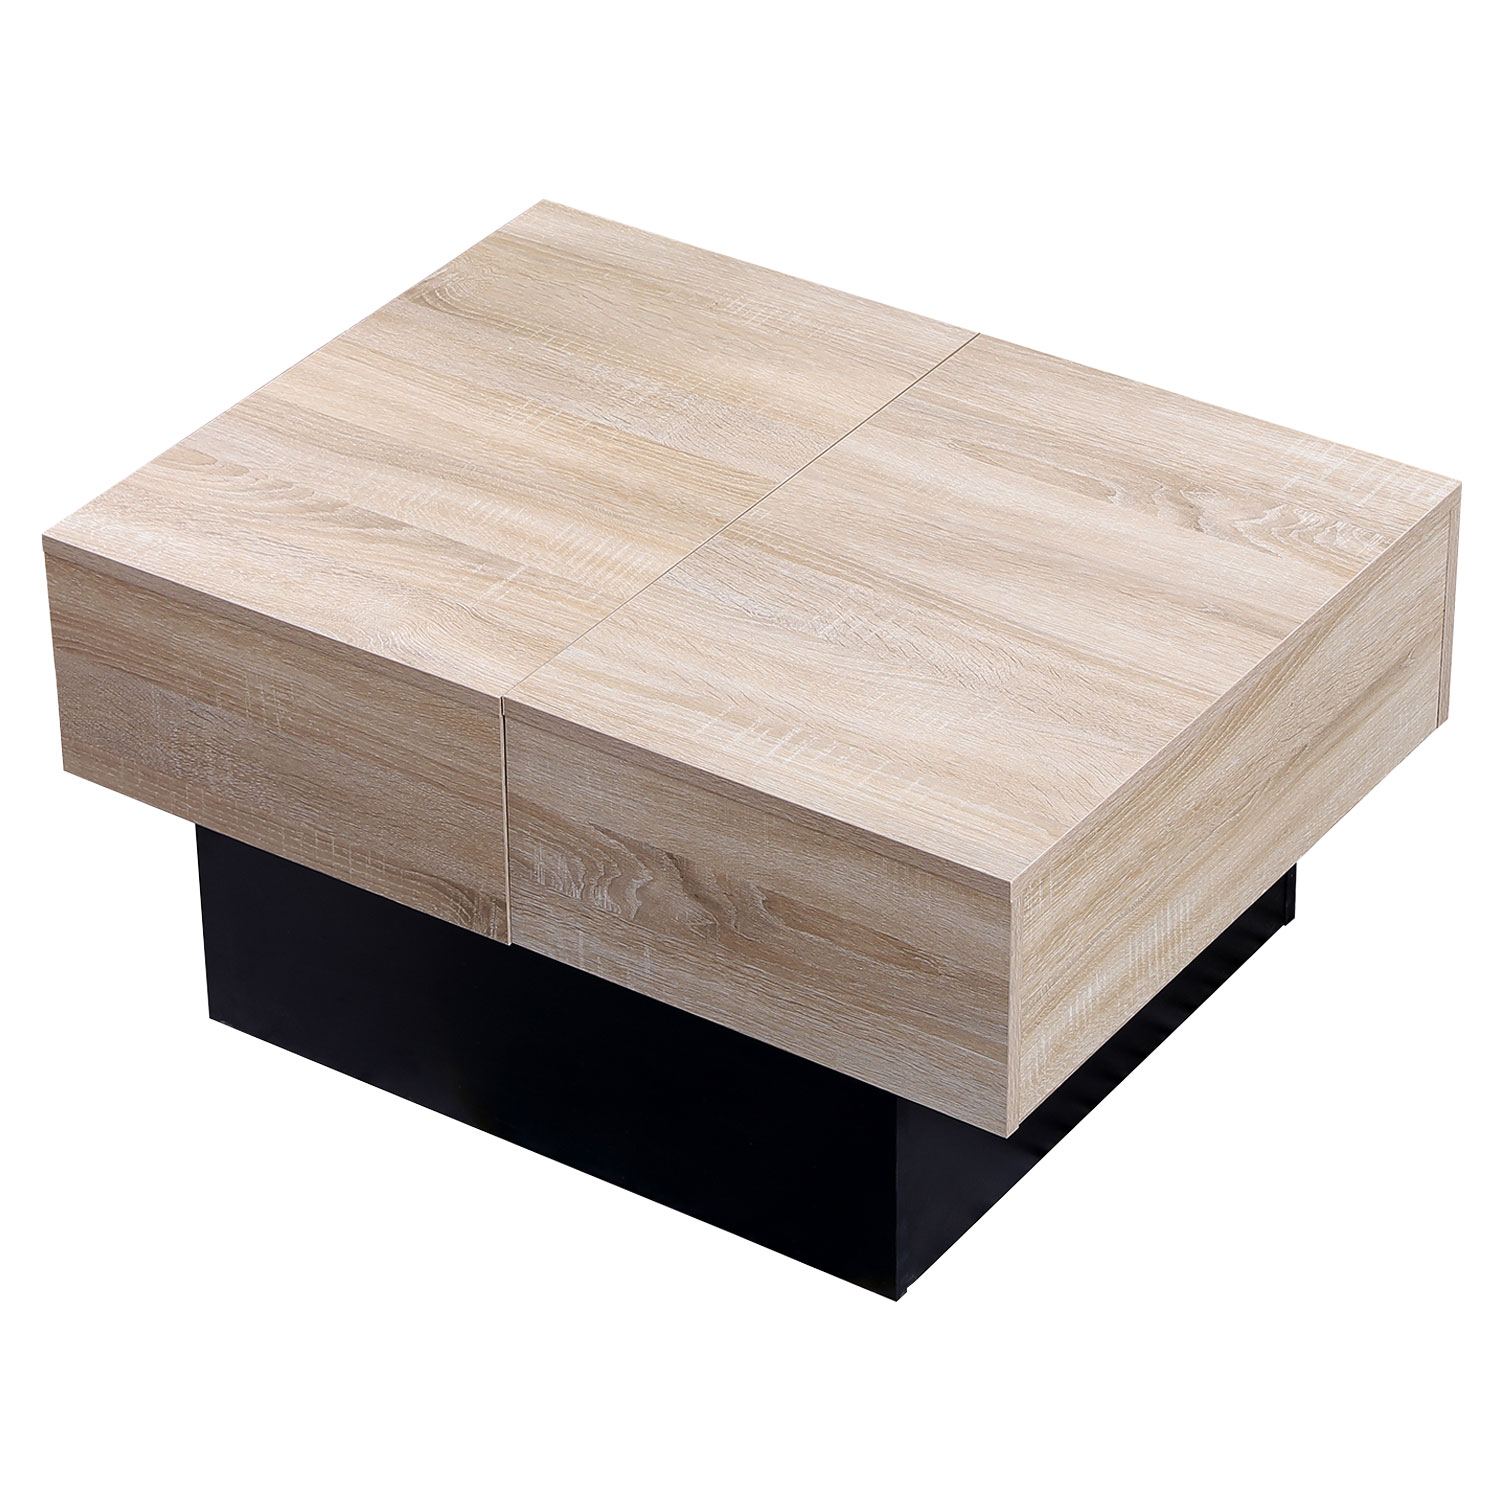 Table basse avec plateaux amovibles noire et bois